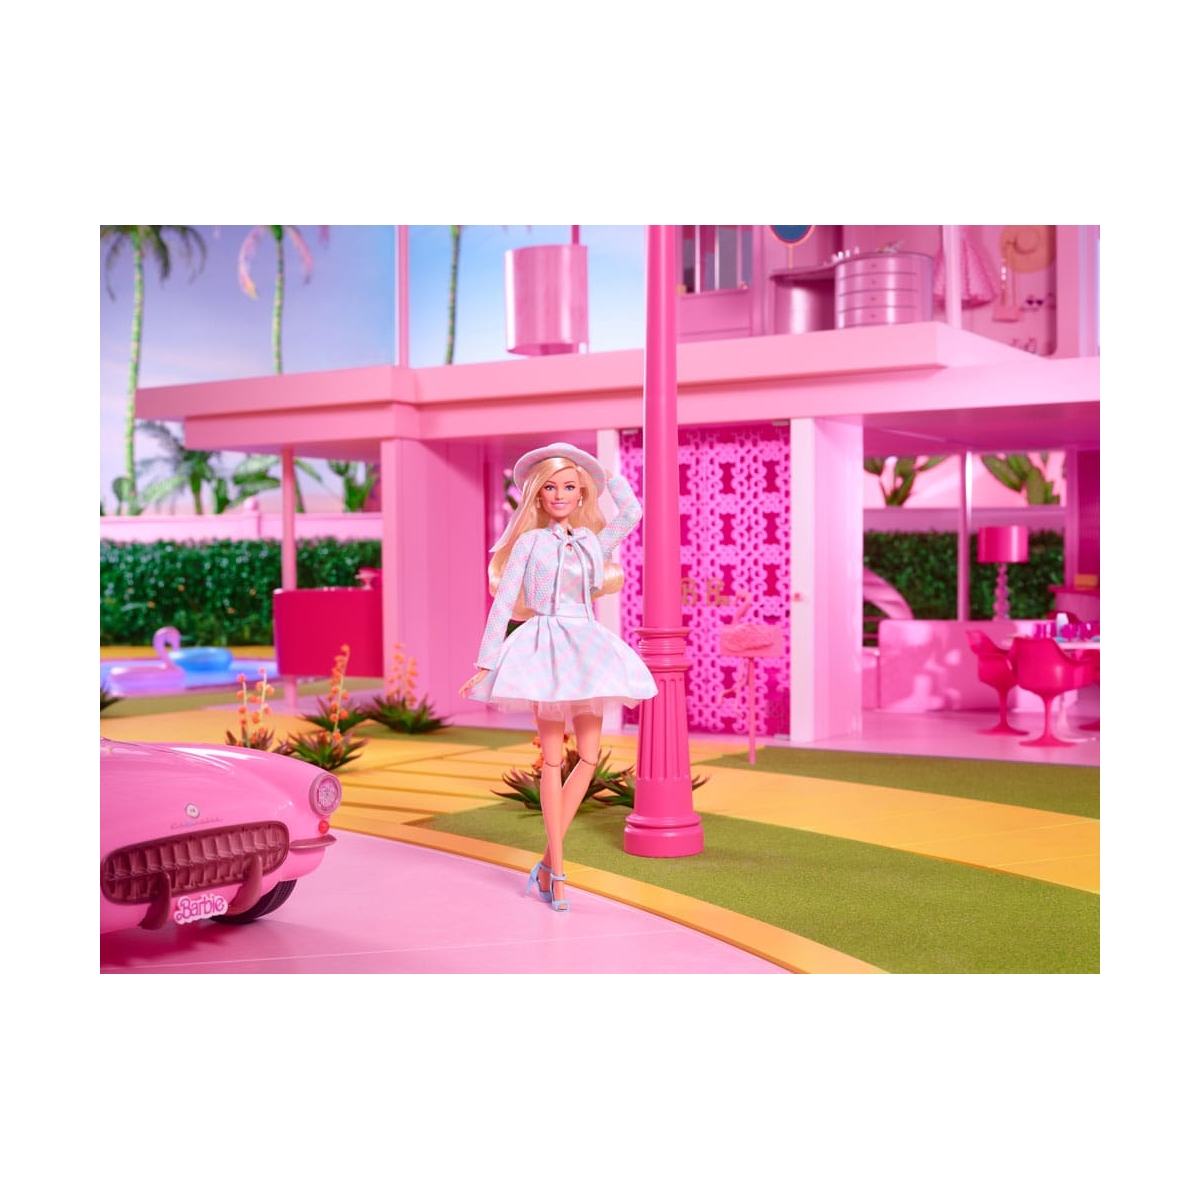 MATTEL - Barbie the movie - poupée barbie in plaid matching set